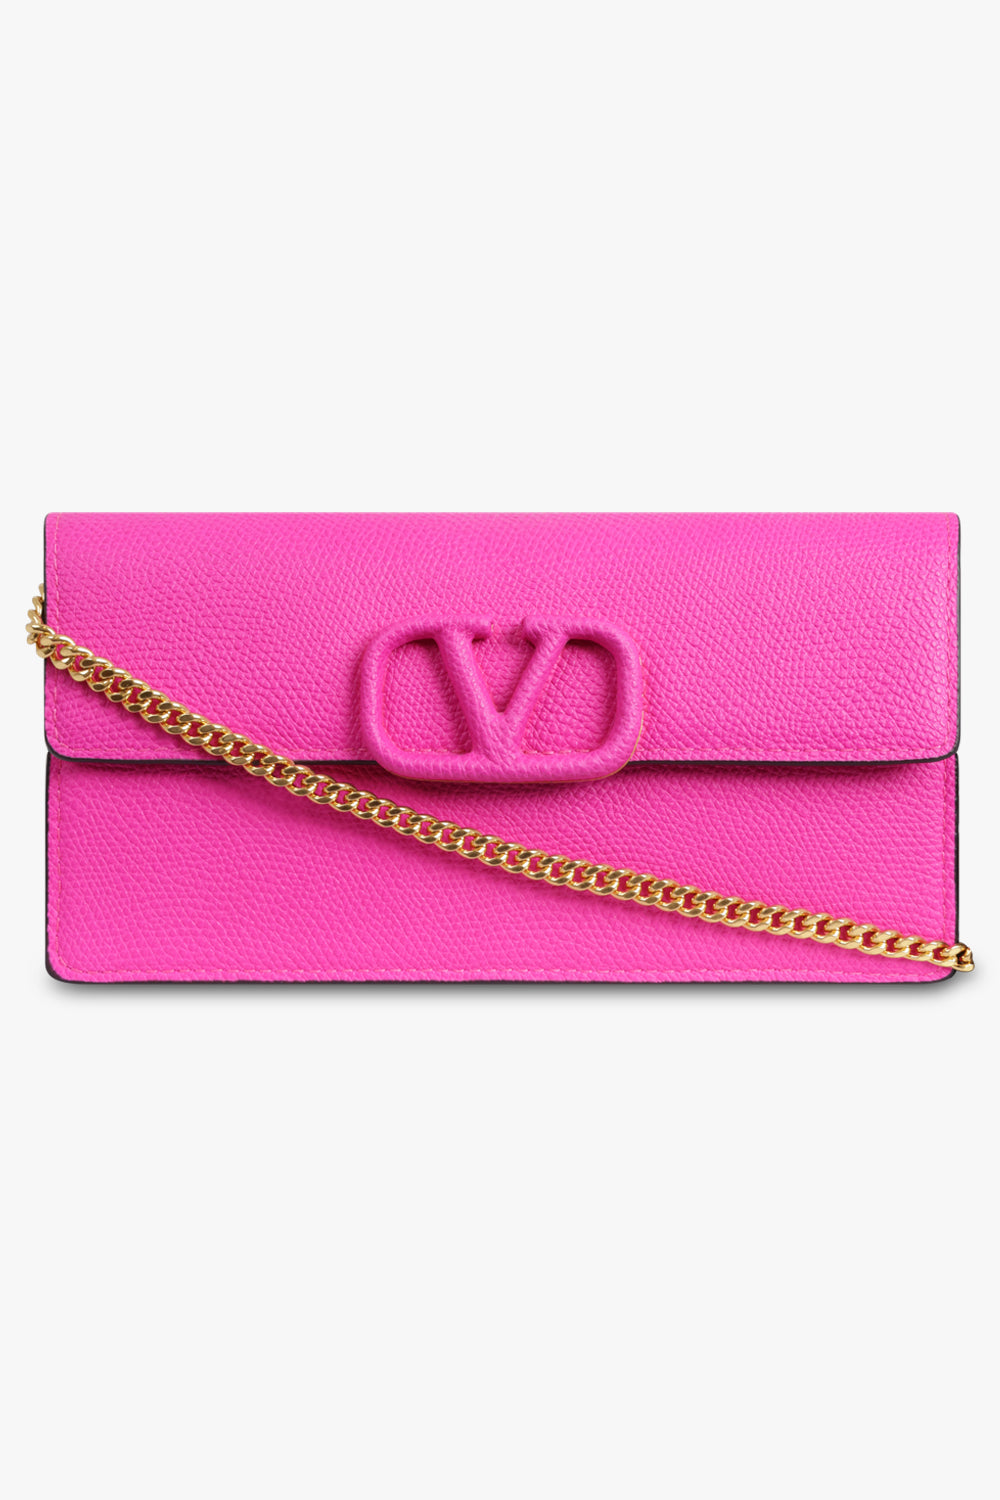 Valentino Bags Wallet - fuxia/pink - Zalando.de